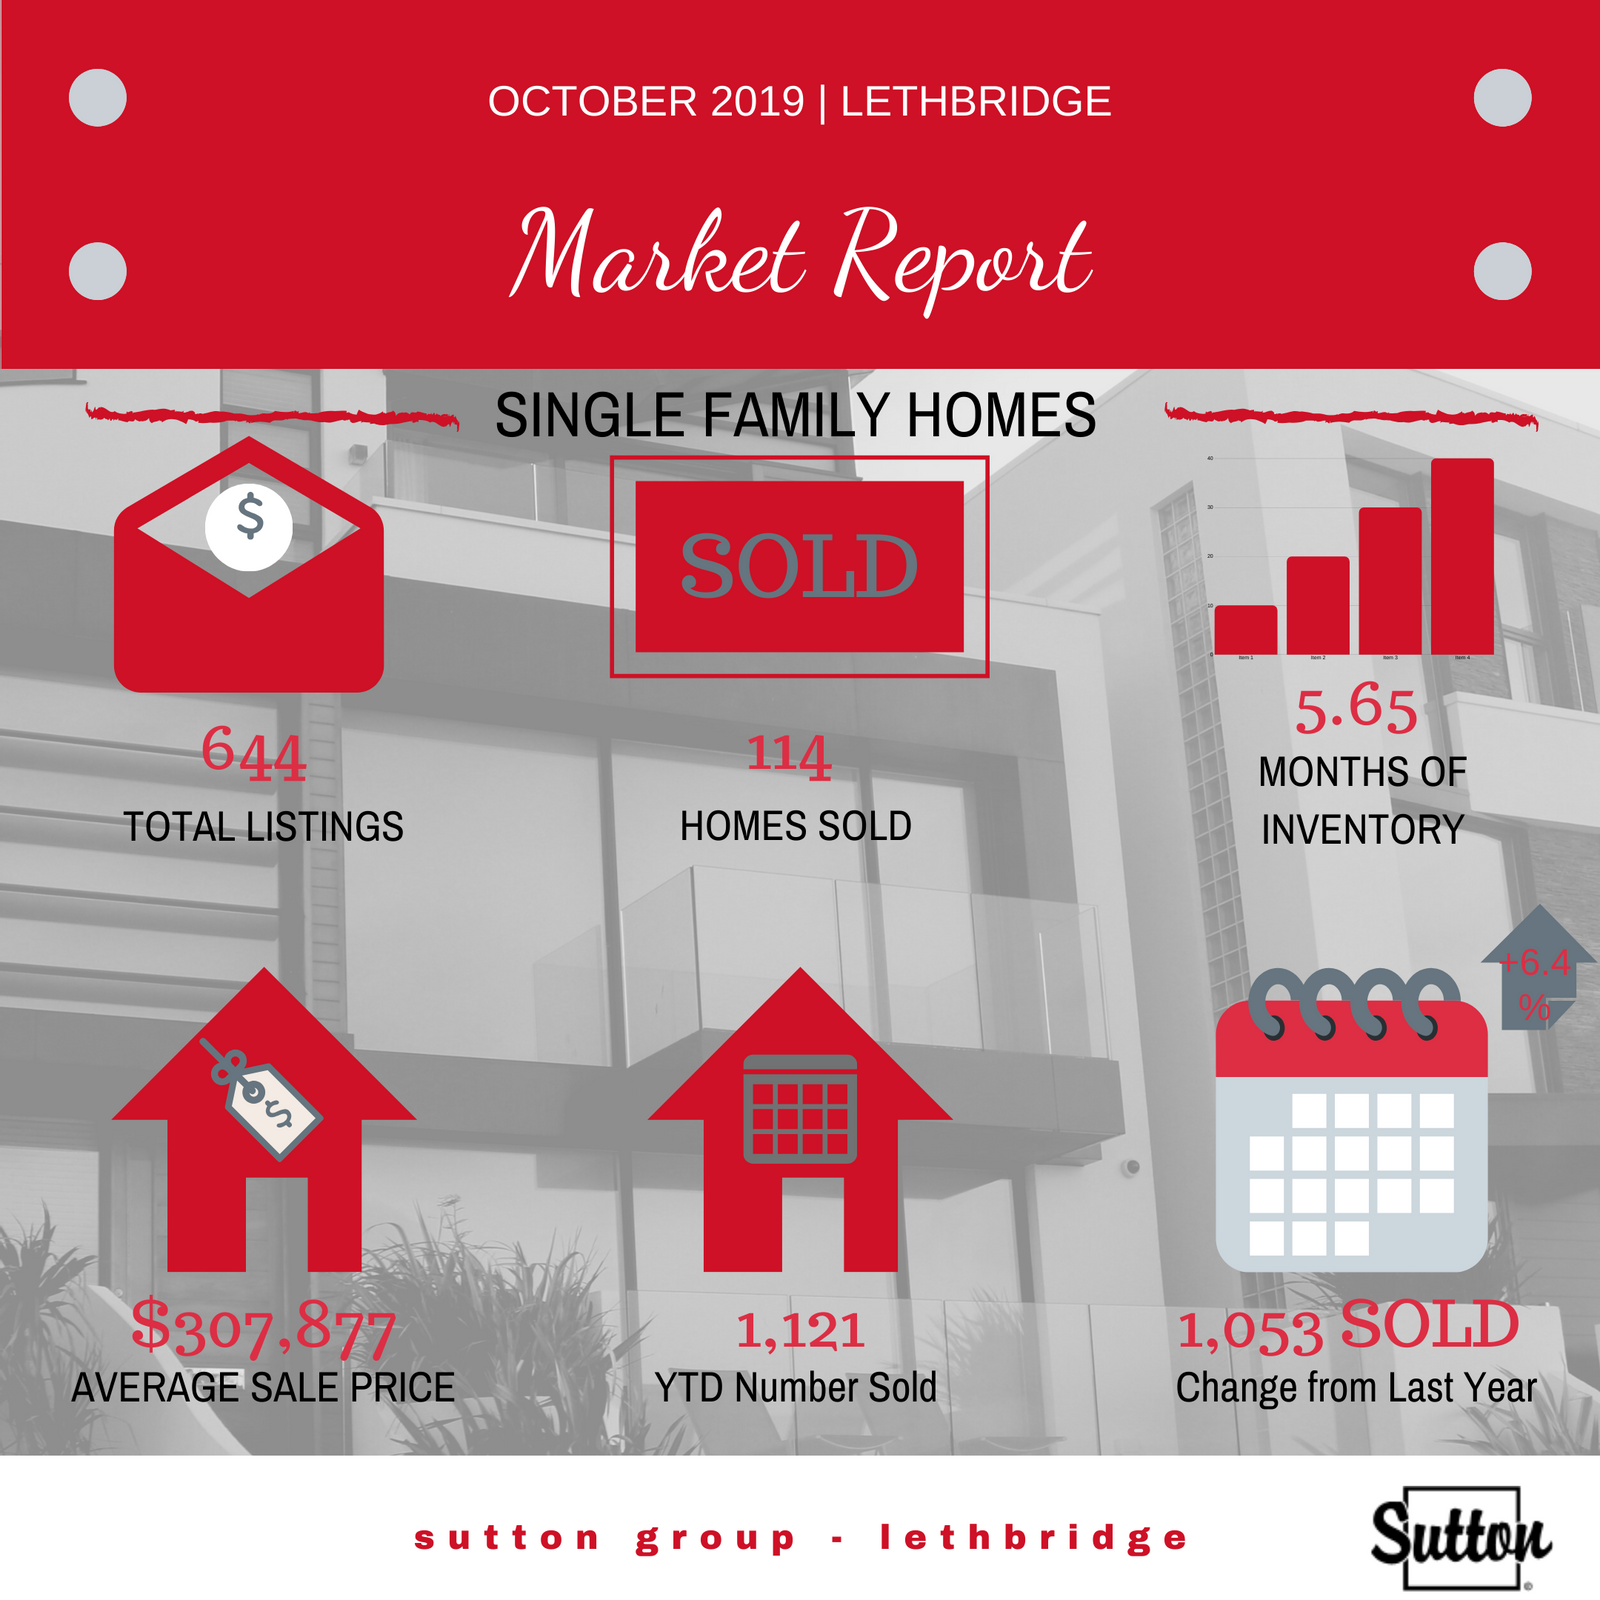 October 2019 Market Report